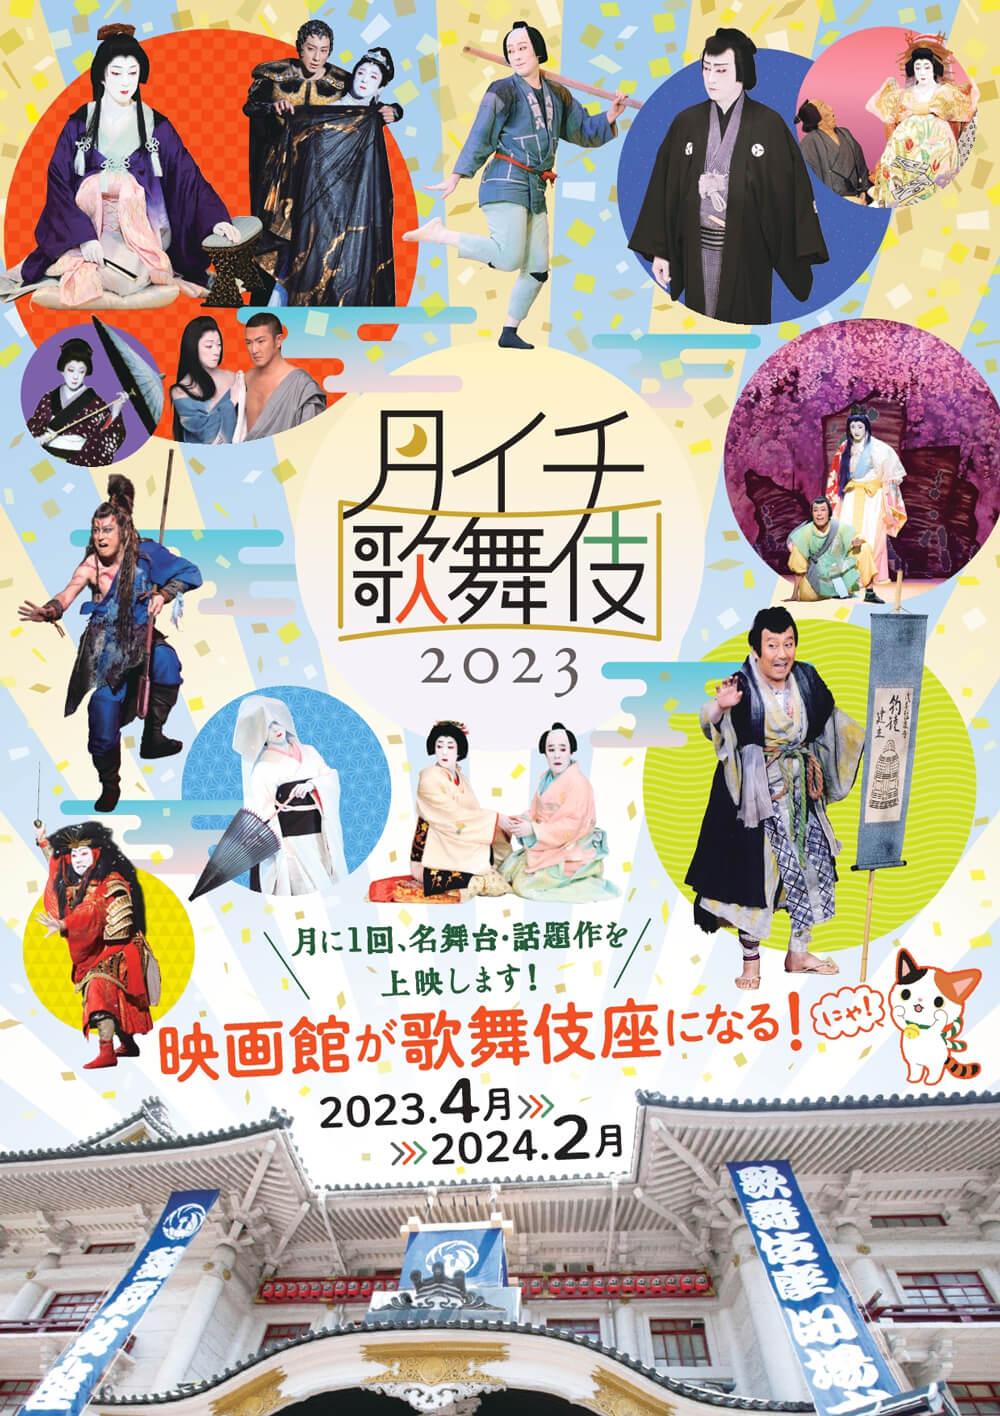 《月イチ歌舞伎》2023、上映ラインナップ発表